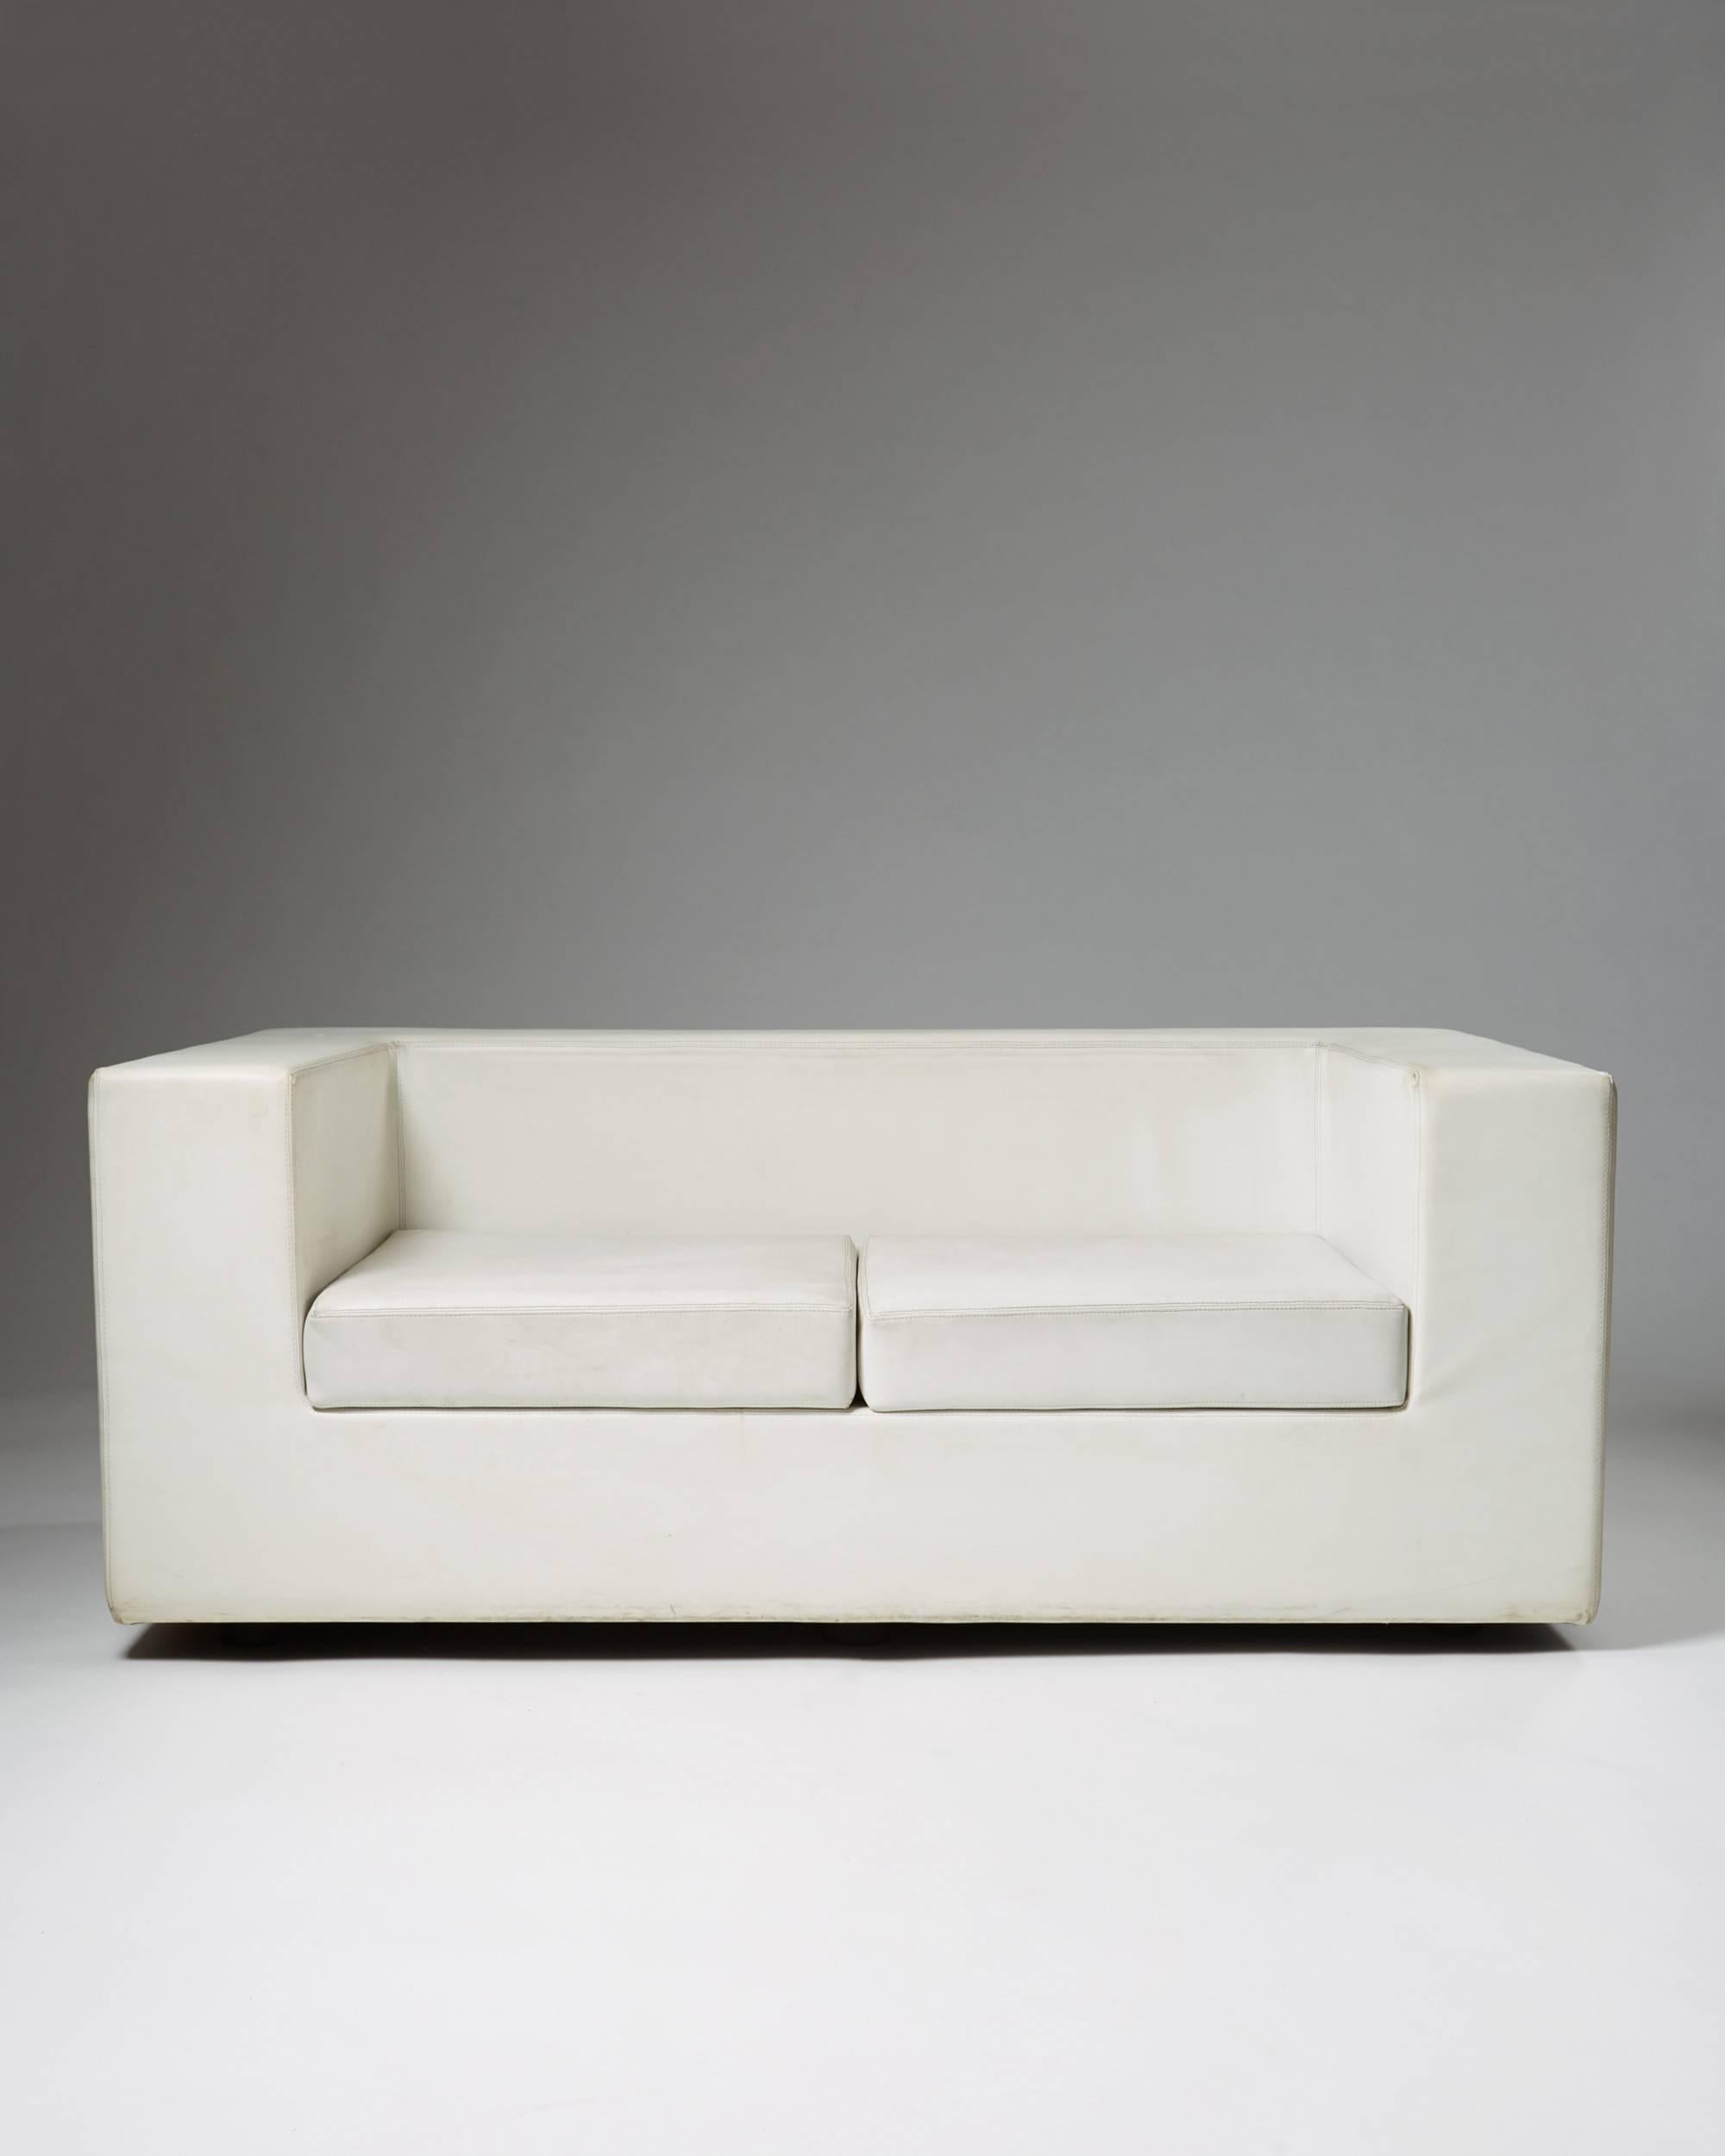 Sofa “Throwaway” designed by Willie Landels for Zanotta, Italy, 1960s. Vinyl covered foam.

Measures: H 75 cm/ 29 1/2''
L 180 cm/ 5' 11''
D 105 cm/ 41 1/2''
SH 38 cm/ 15